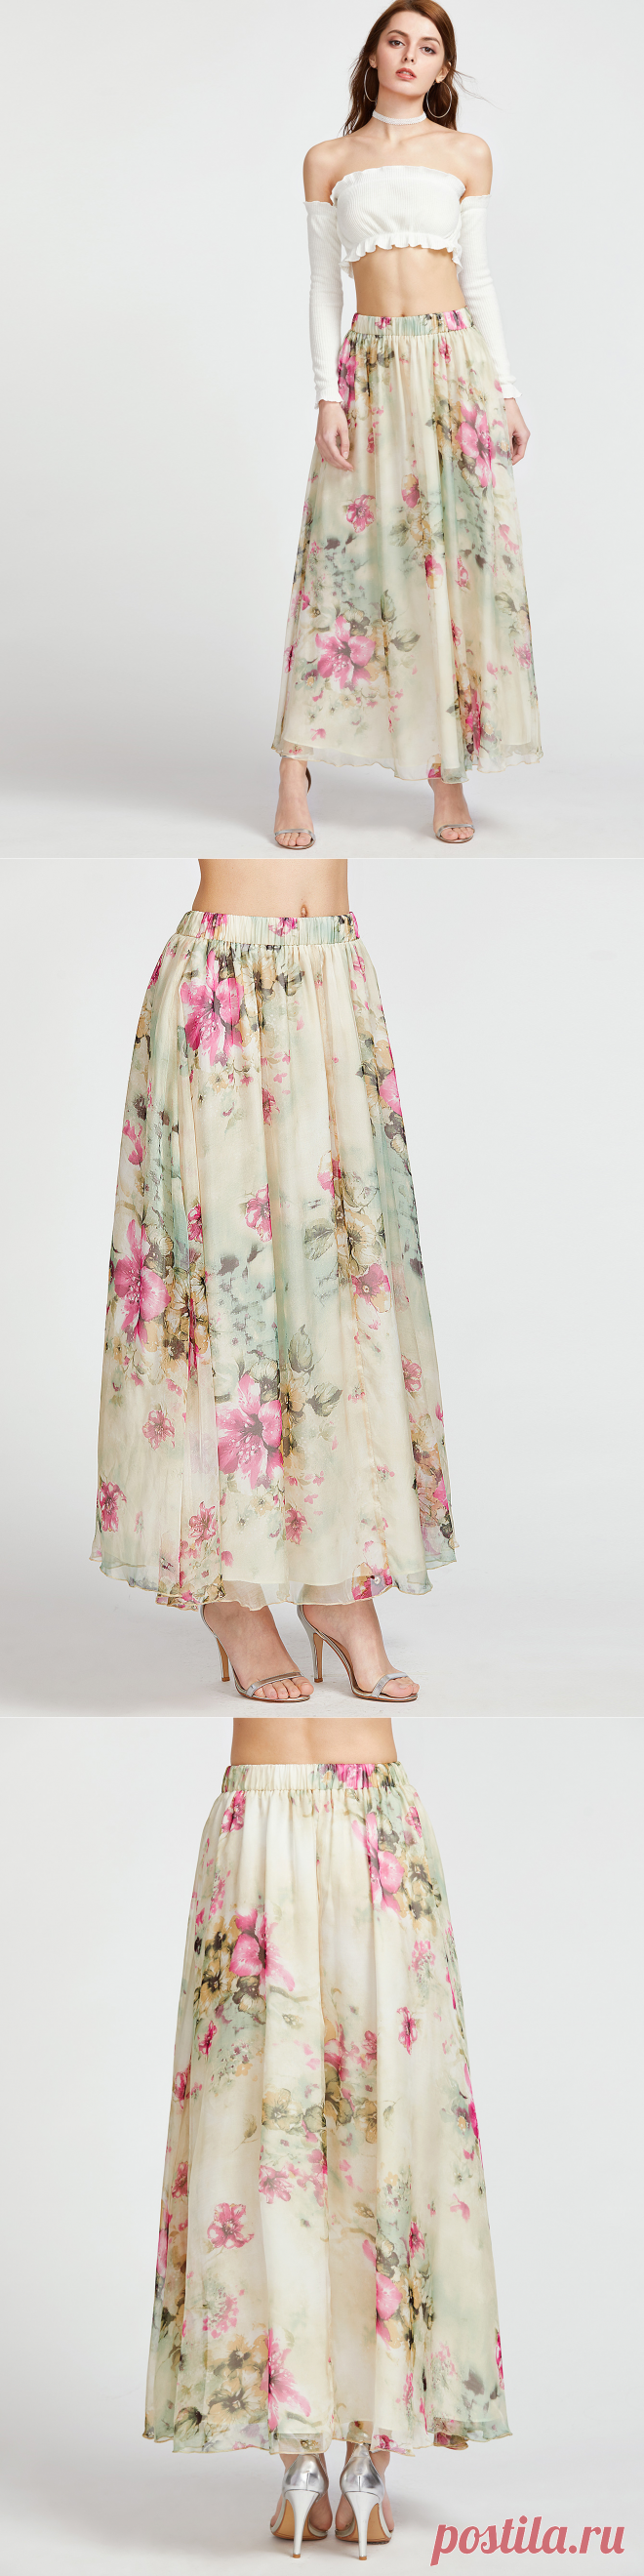 Бежевая модная юбка с цветочным принтом и эластичной талией